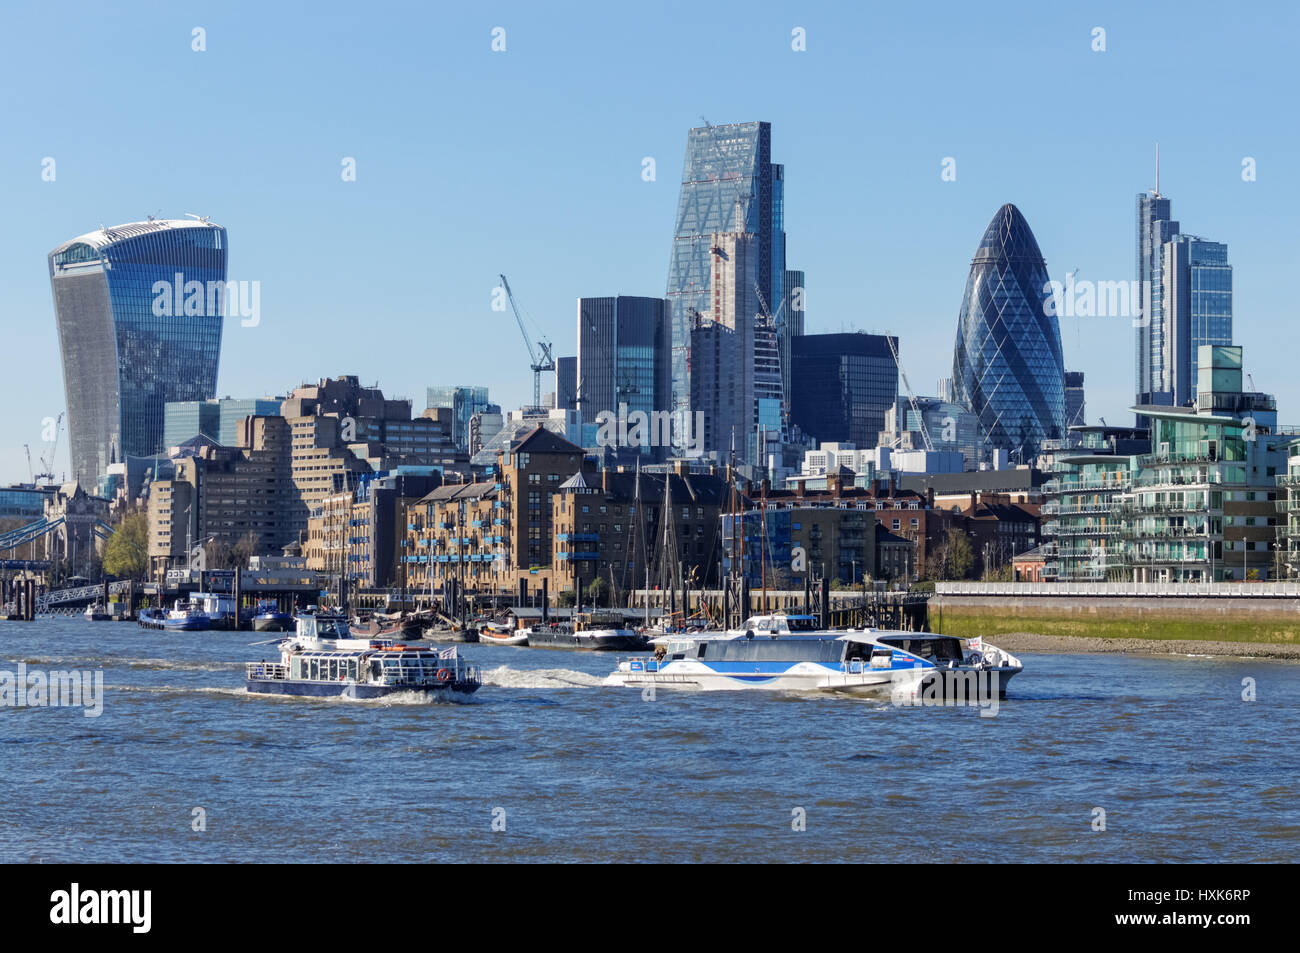 La Tamise et la City de Londres, Londres Angleterre Royaume-Uni UK Banque D'Images